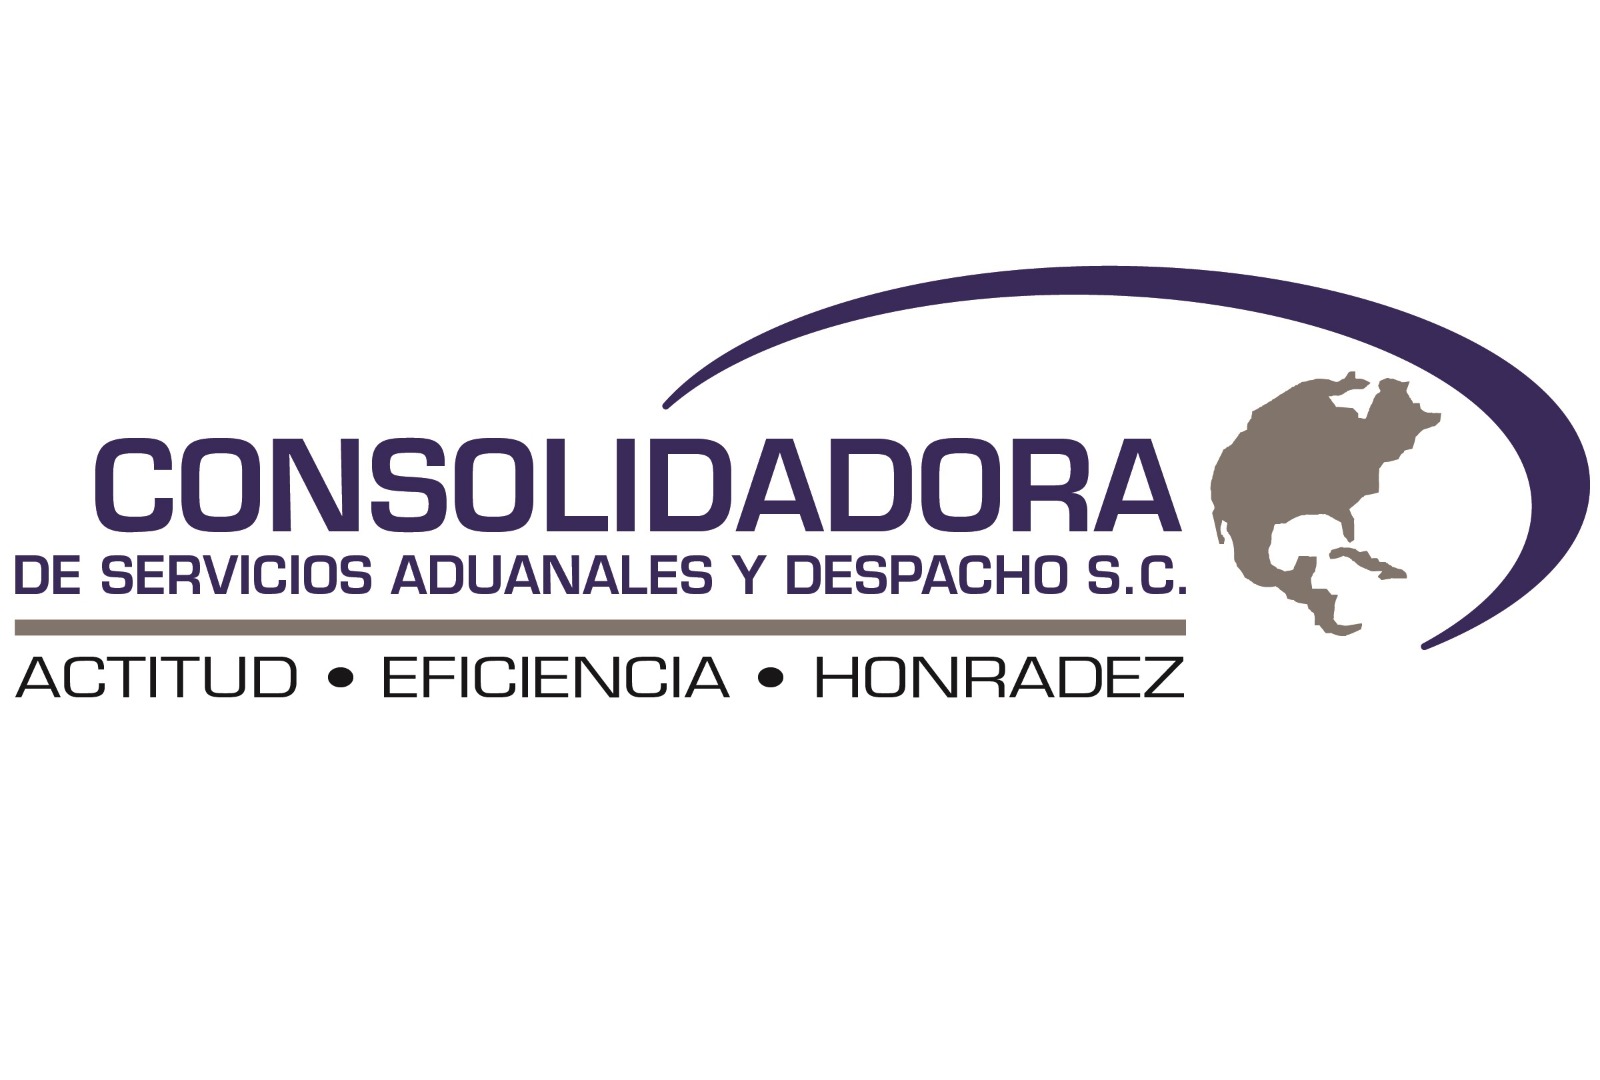 CONSOLIDADORA DE SERVICIOS ADUANALES Y DESPACHO, S.C.